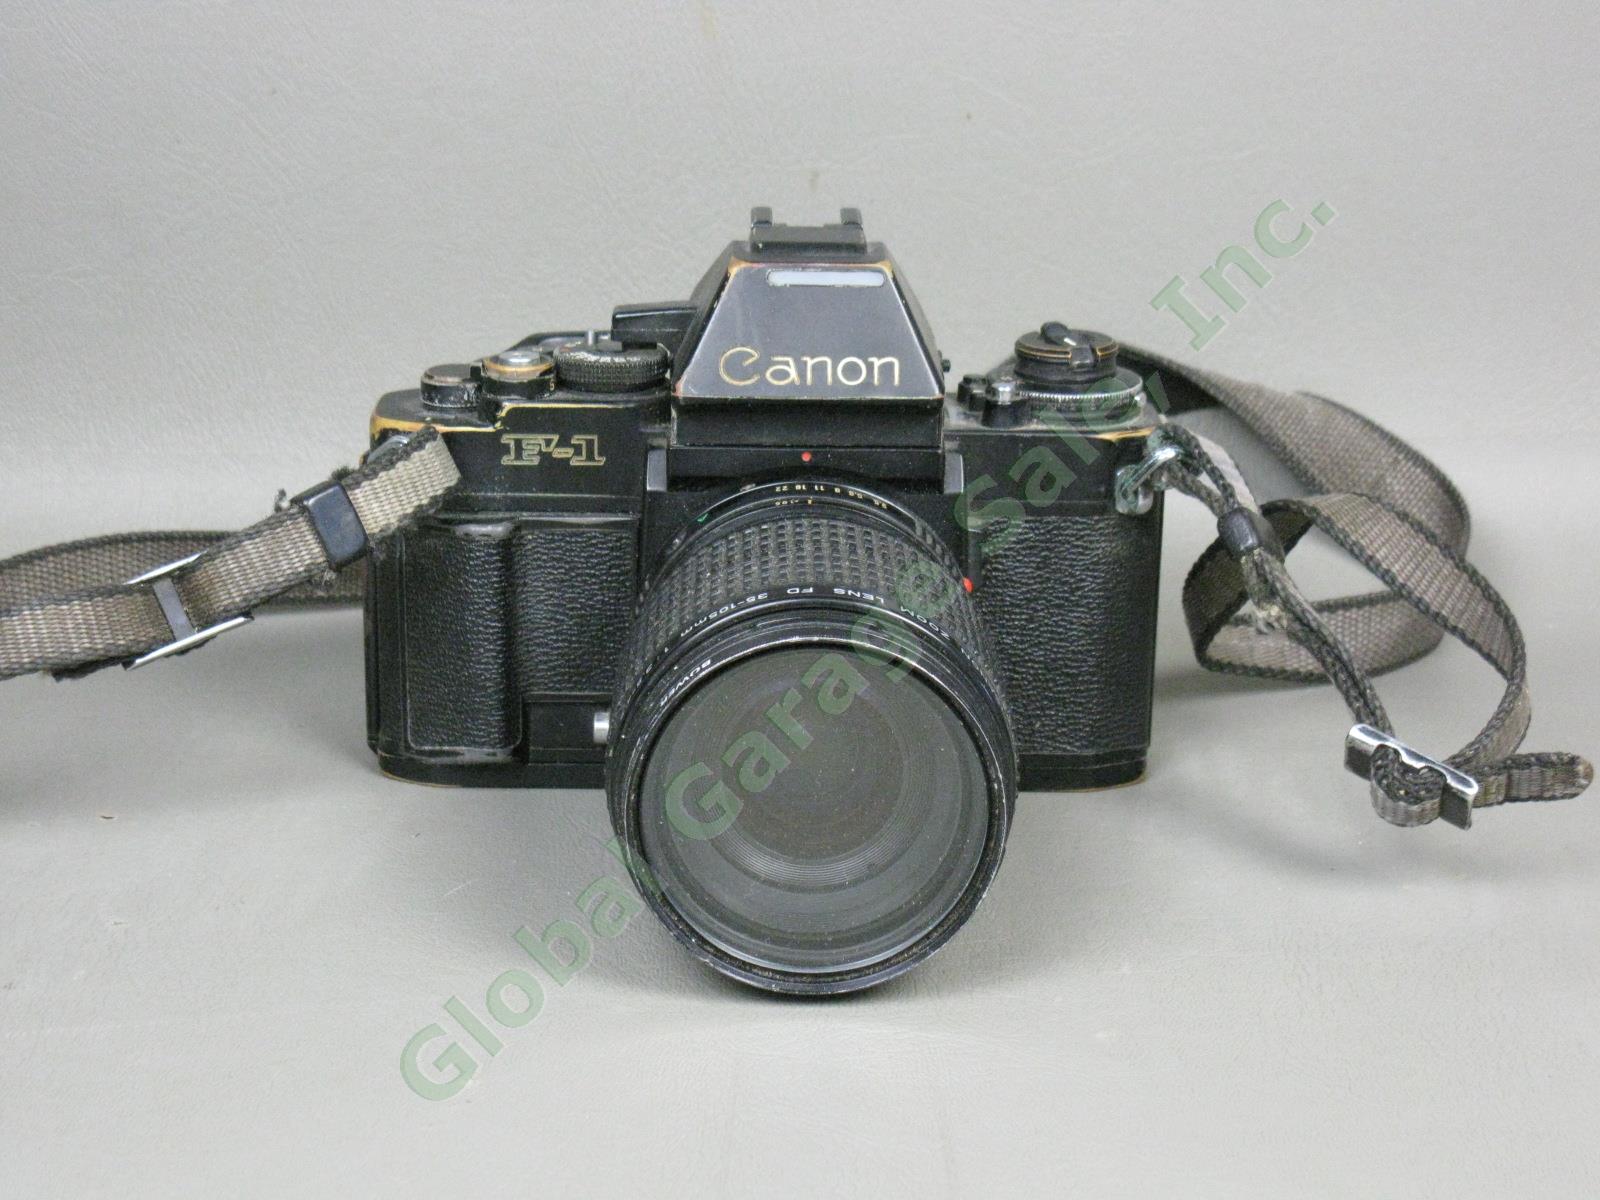 Vtg 1970s Canon F-1 35mm SLR Film Camera FD 35-105mm 1:3.5-4.5 Zoom Lens As-Is